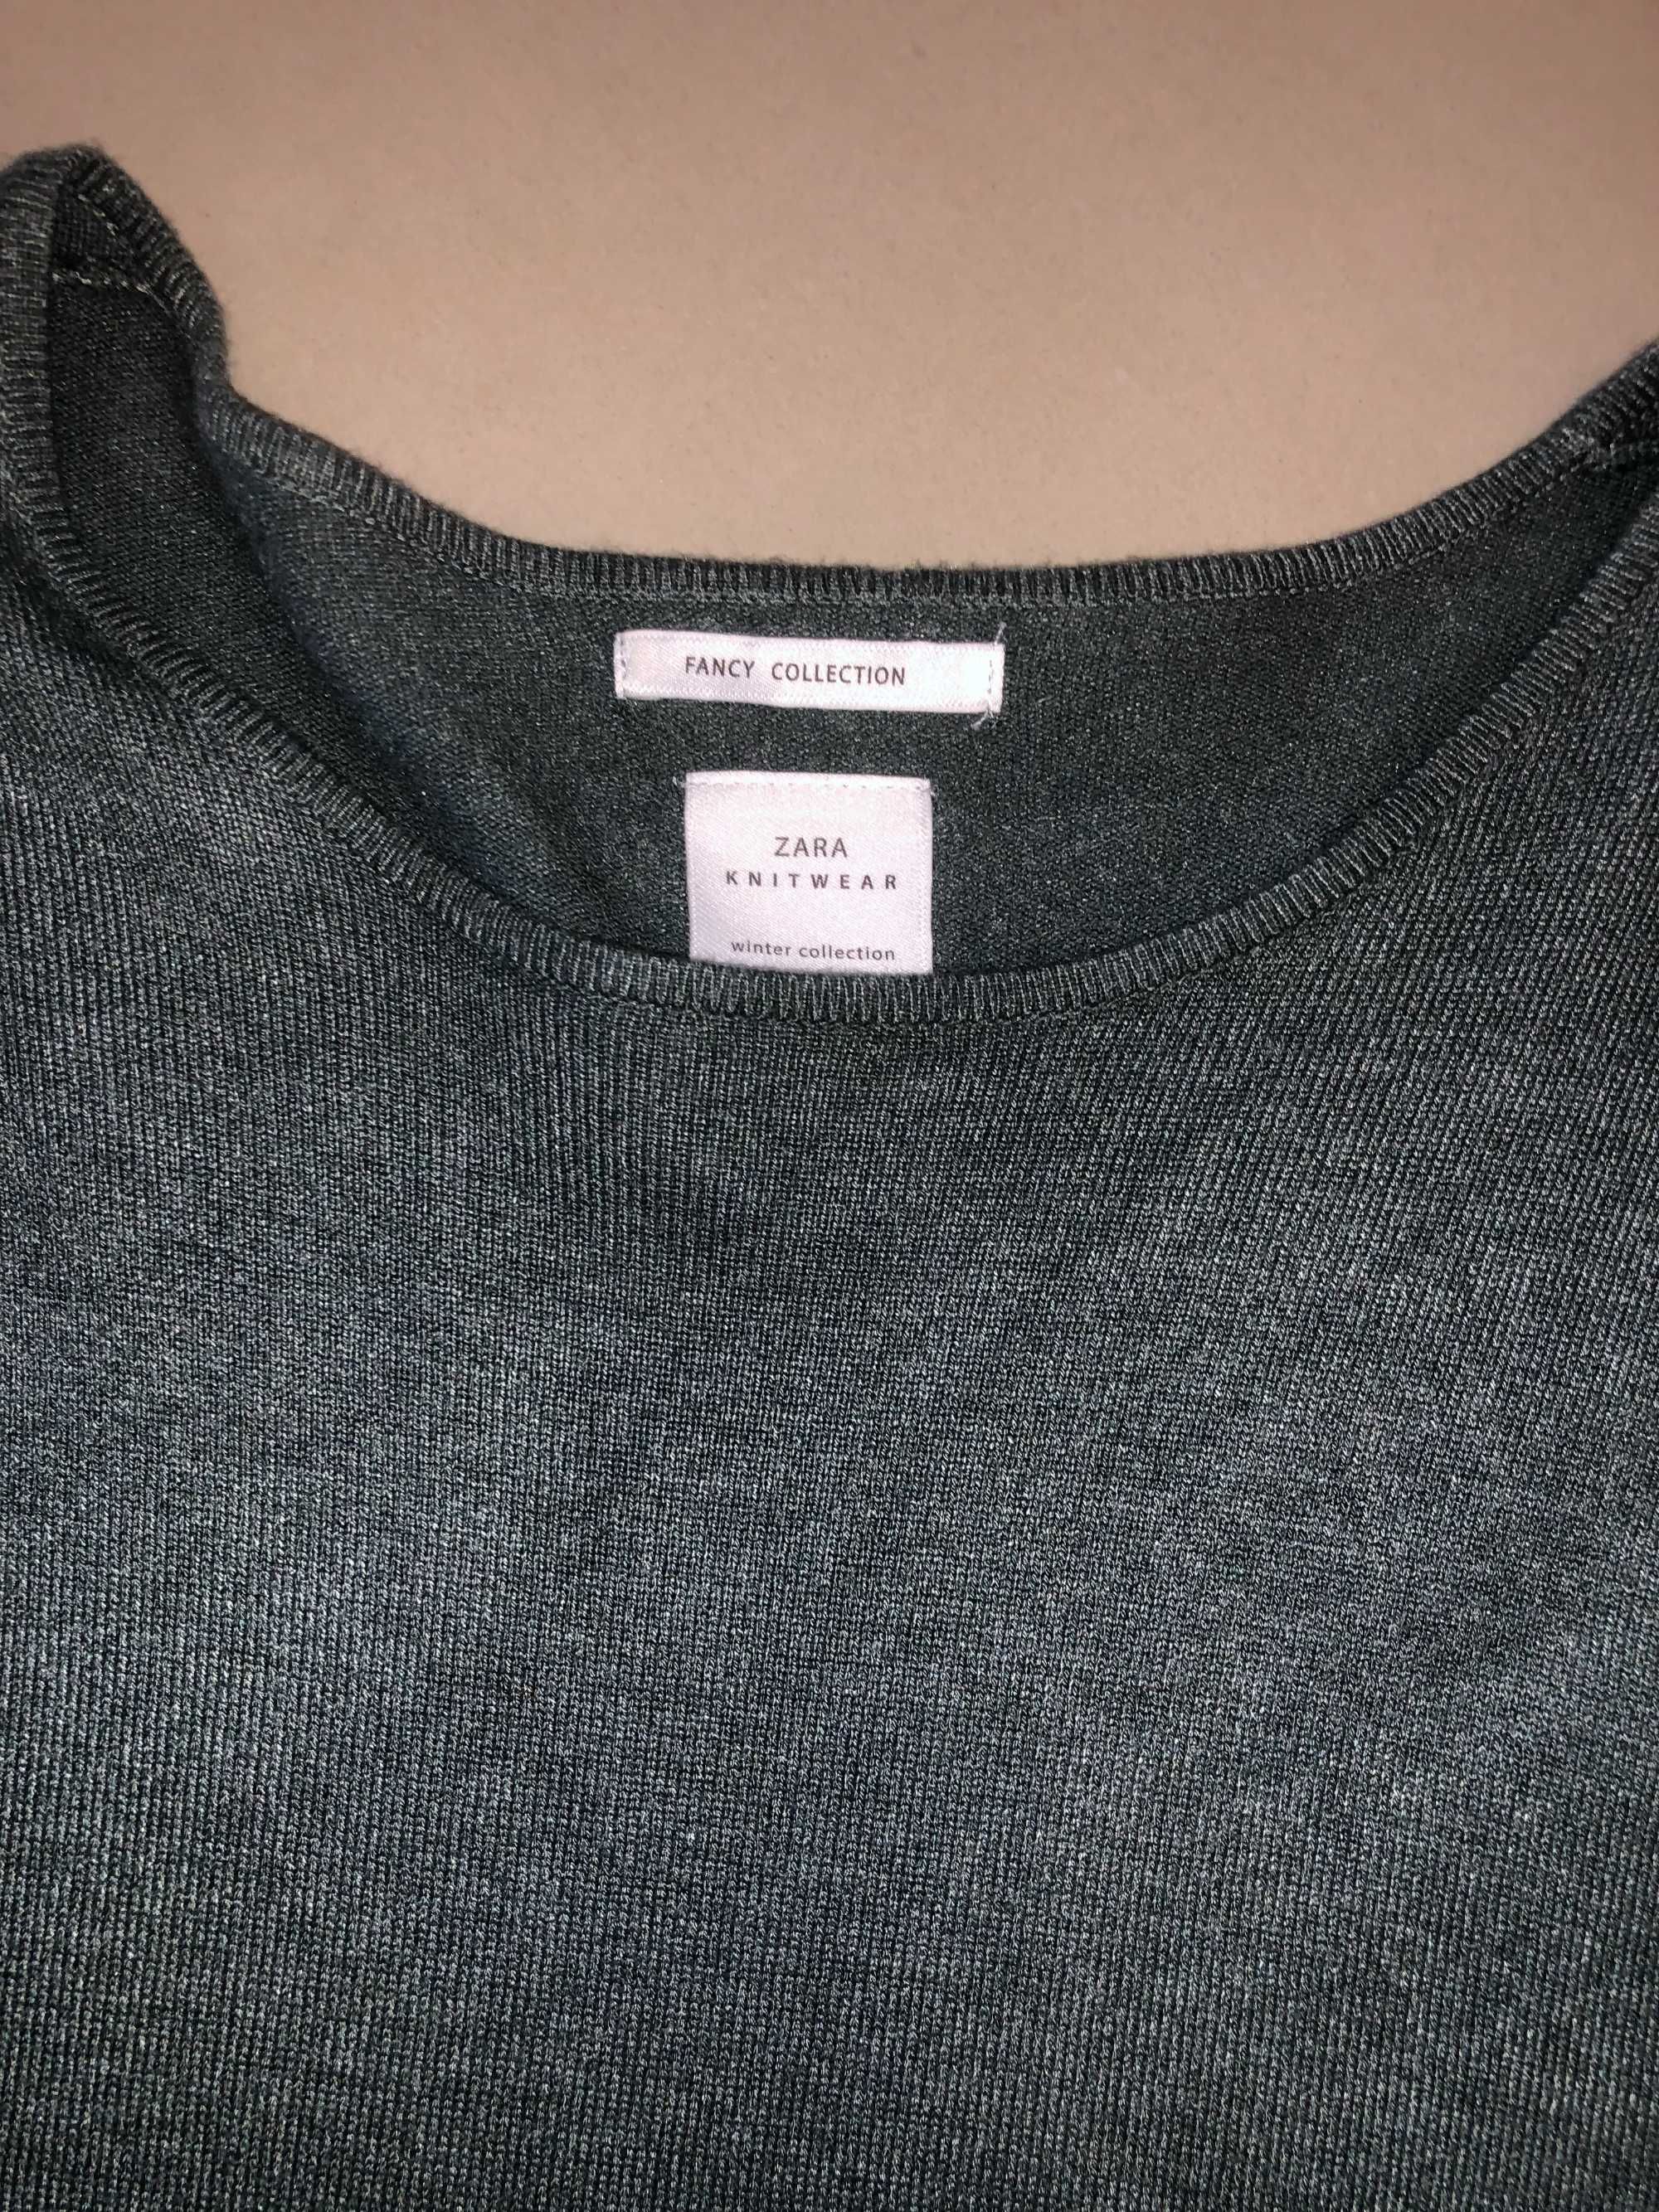 Rochita tricotata Zara, noua fara eticheta, pt. 13-14 ani